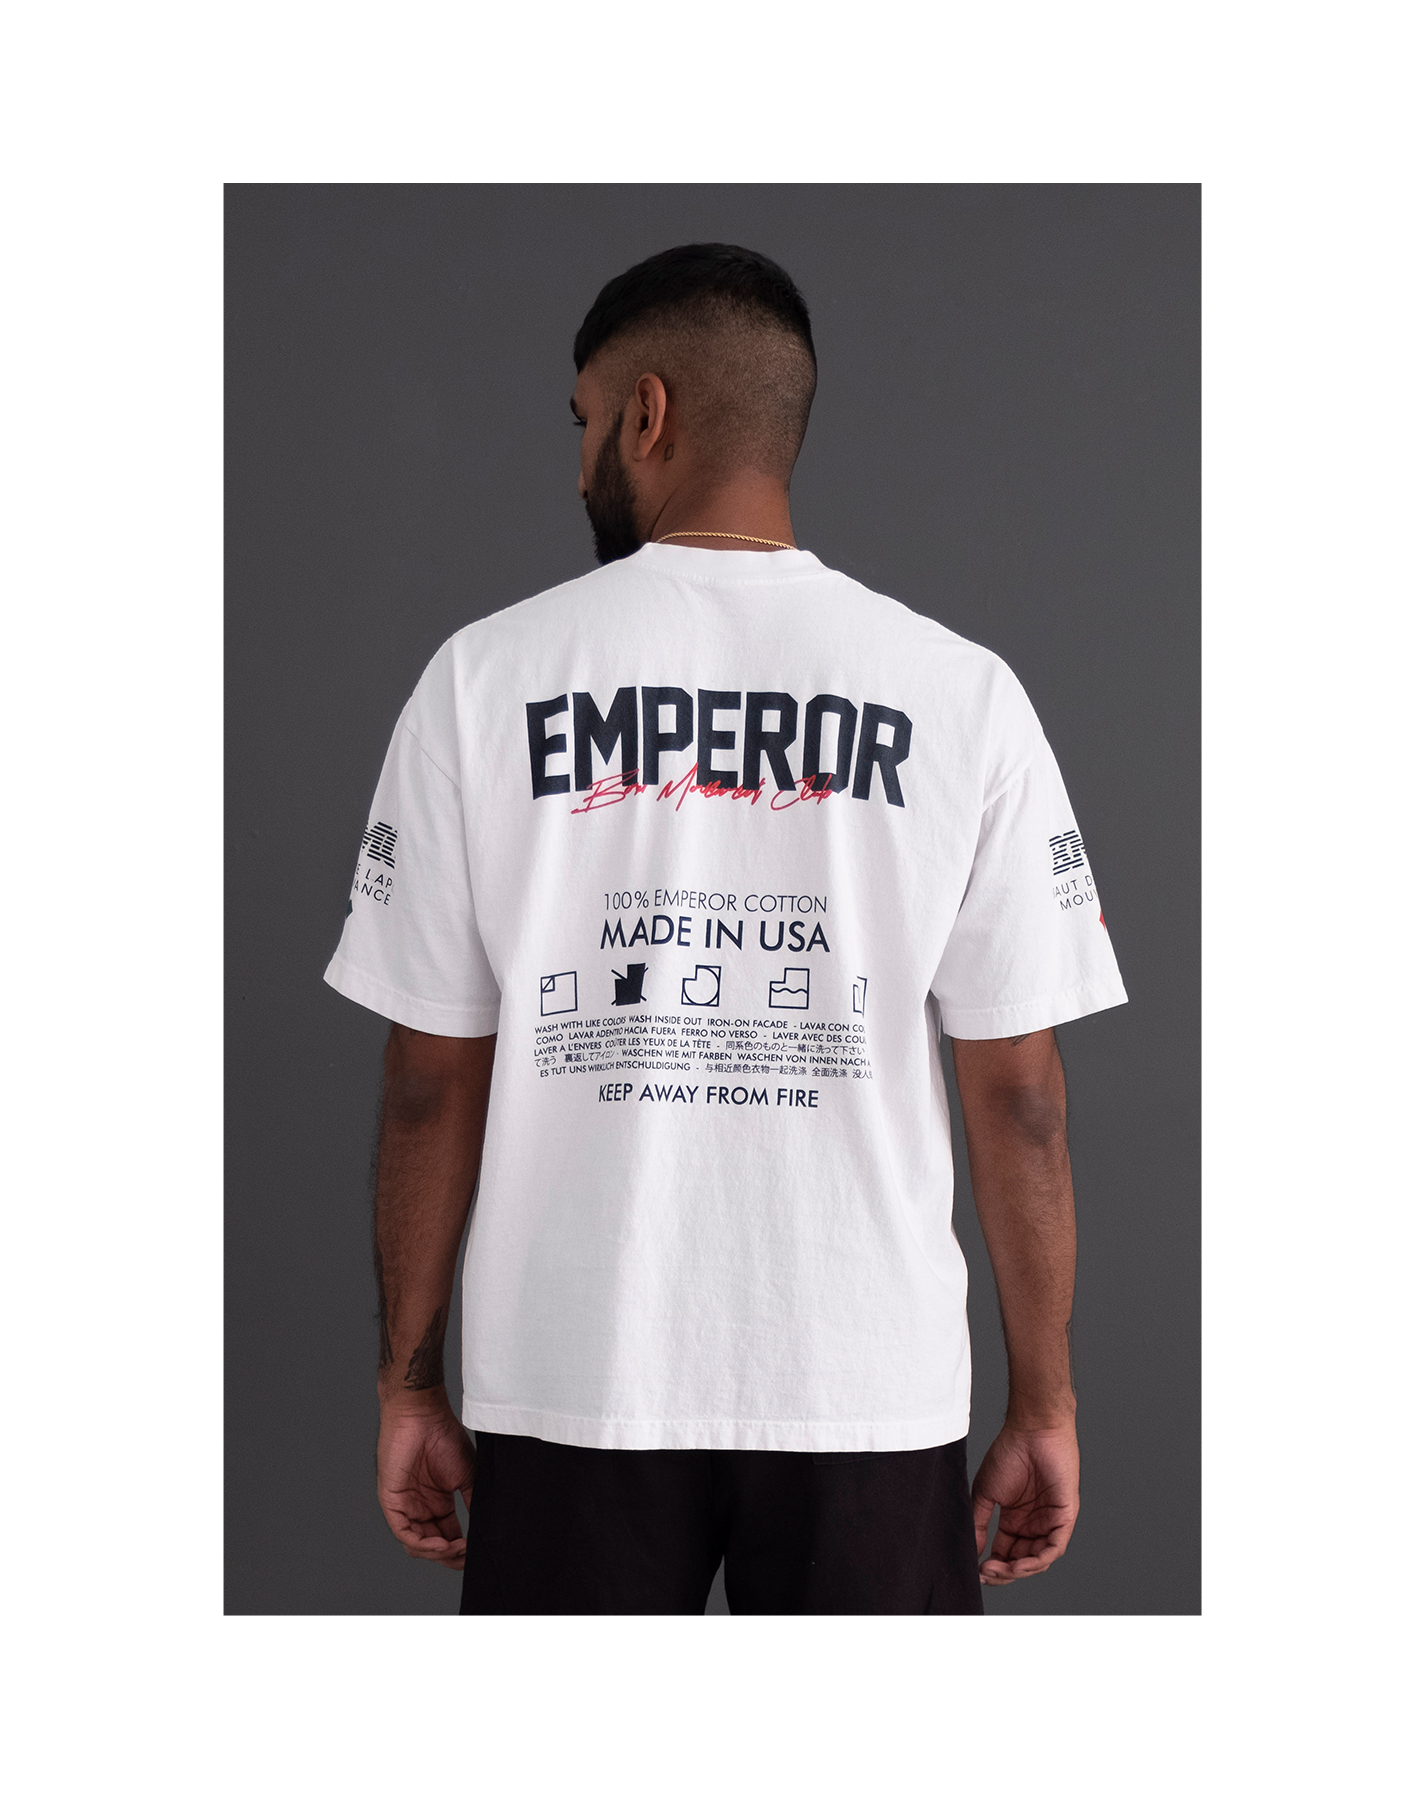 emperor livery shirt